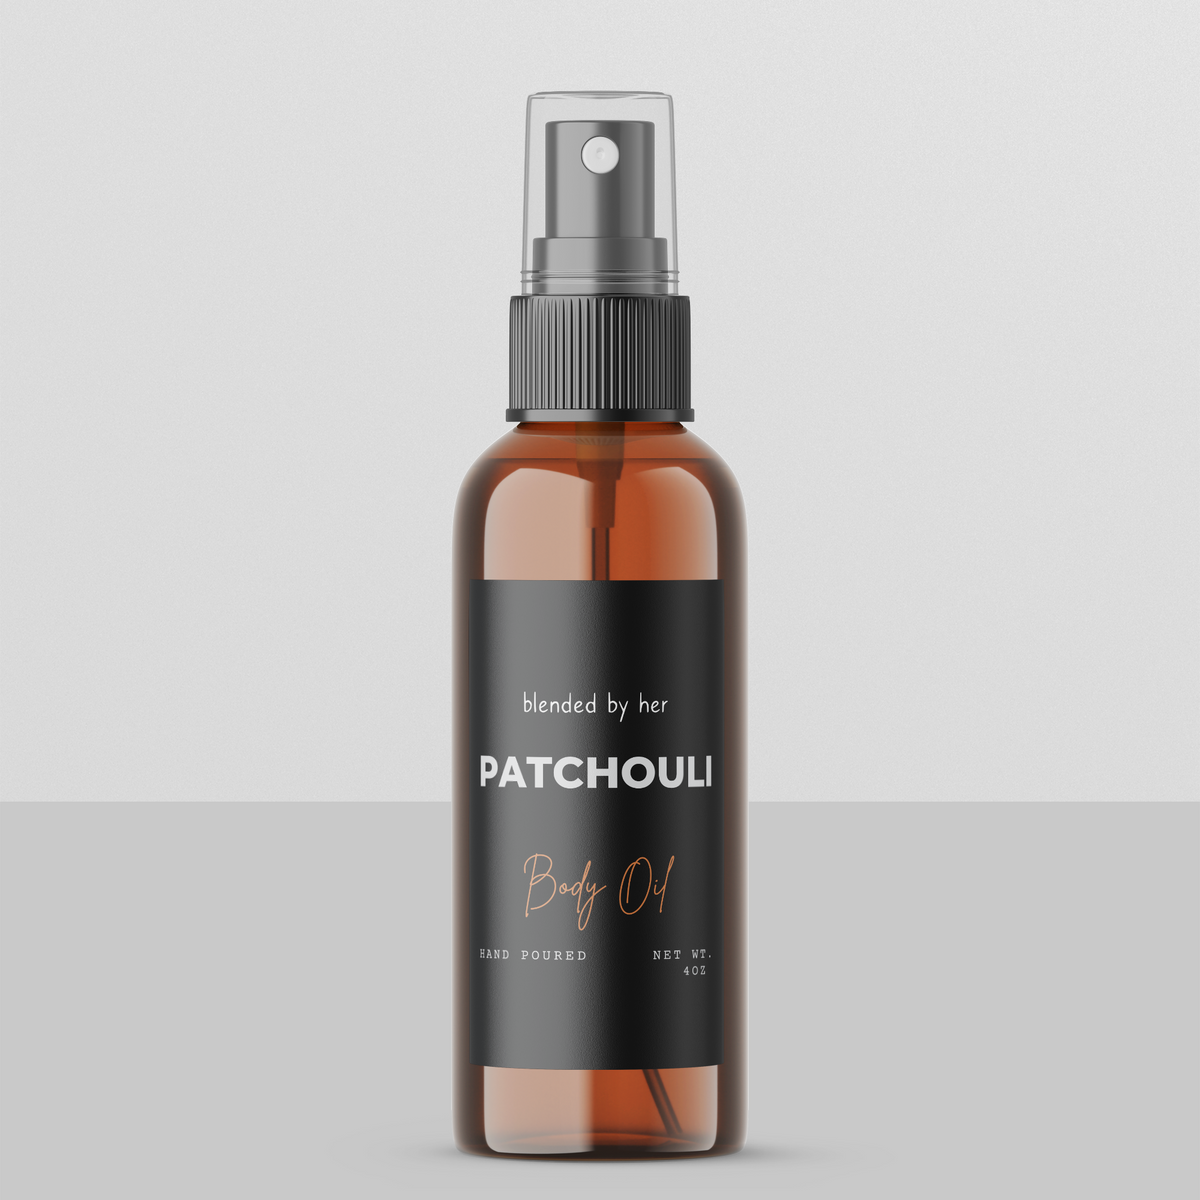 Patchouli Body Oil